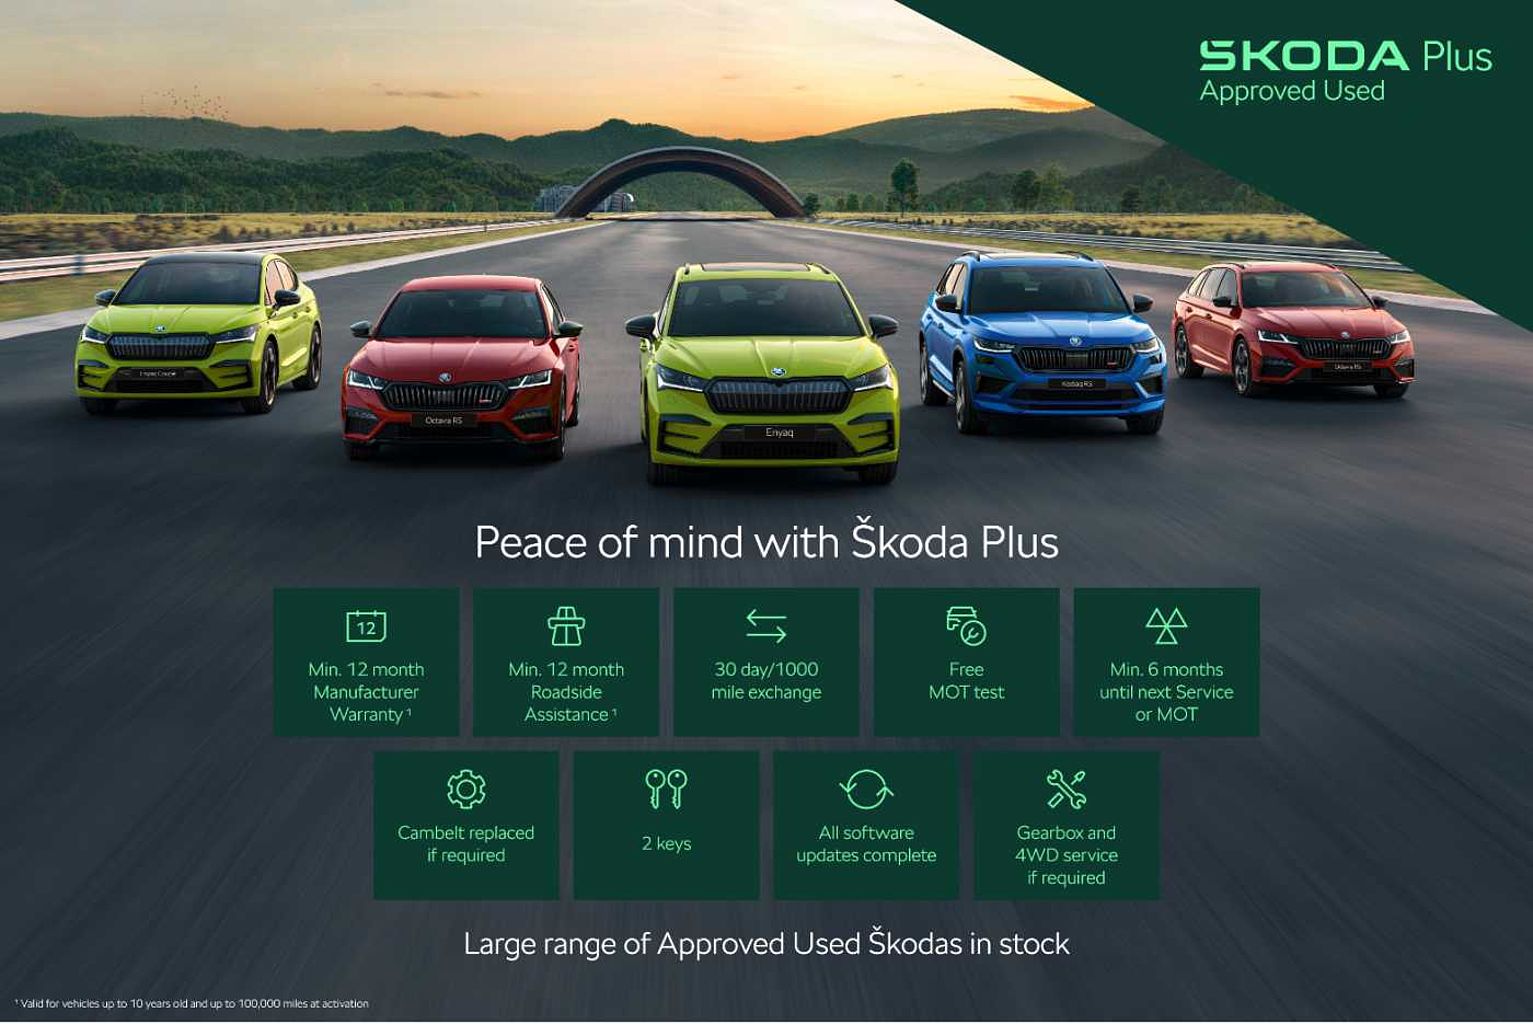 SKODA Kodiaq 2.0 TDI (200ps) Laurin & Klement (7 Seats) 4x4 Auto/DSG SUV